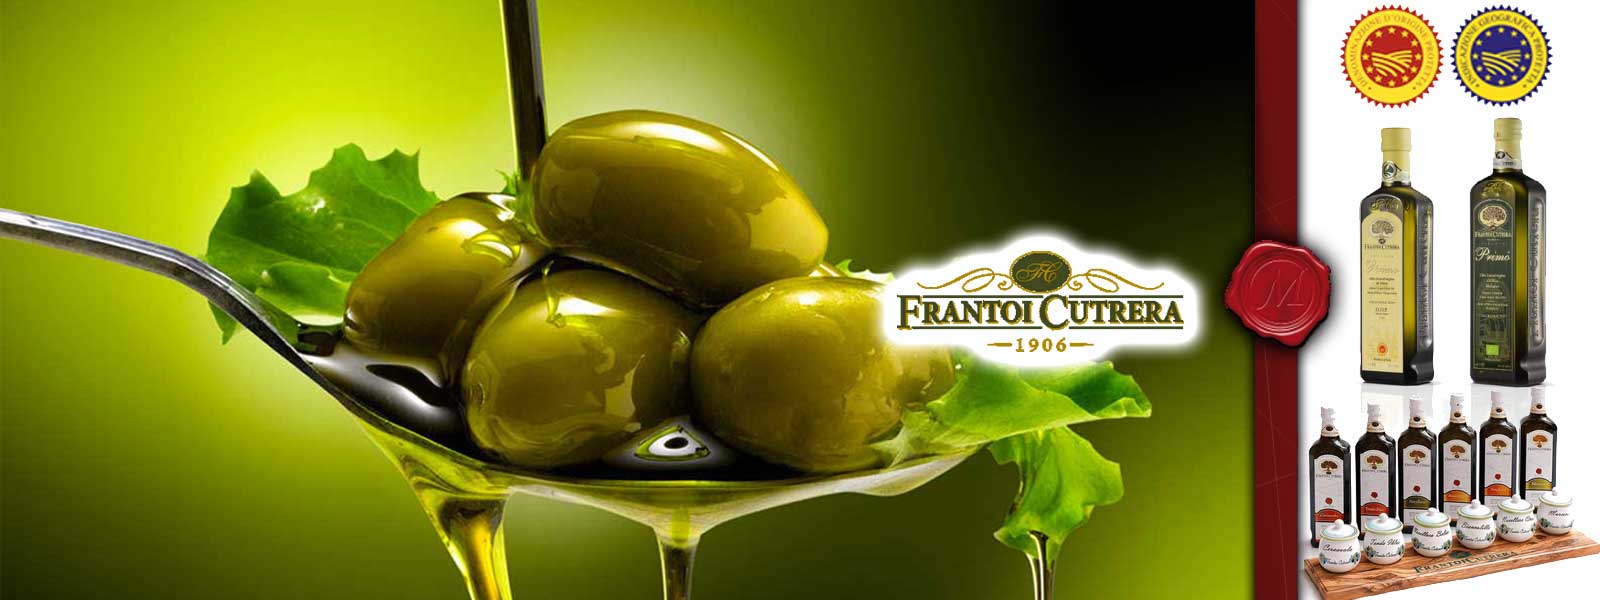 Olivolja fran Frantoi Cutrera 